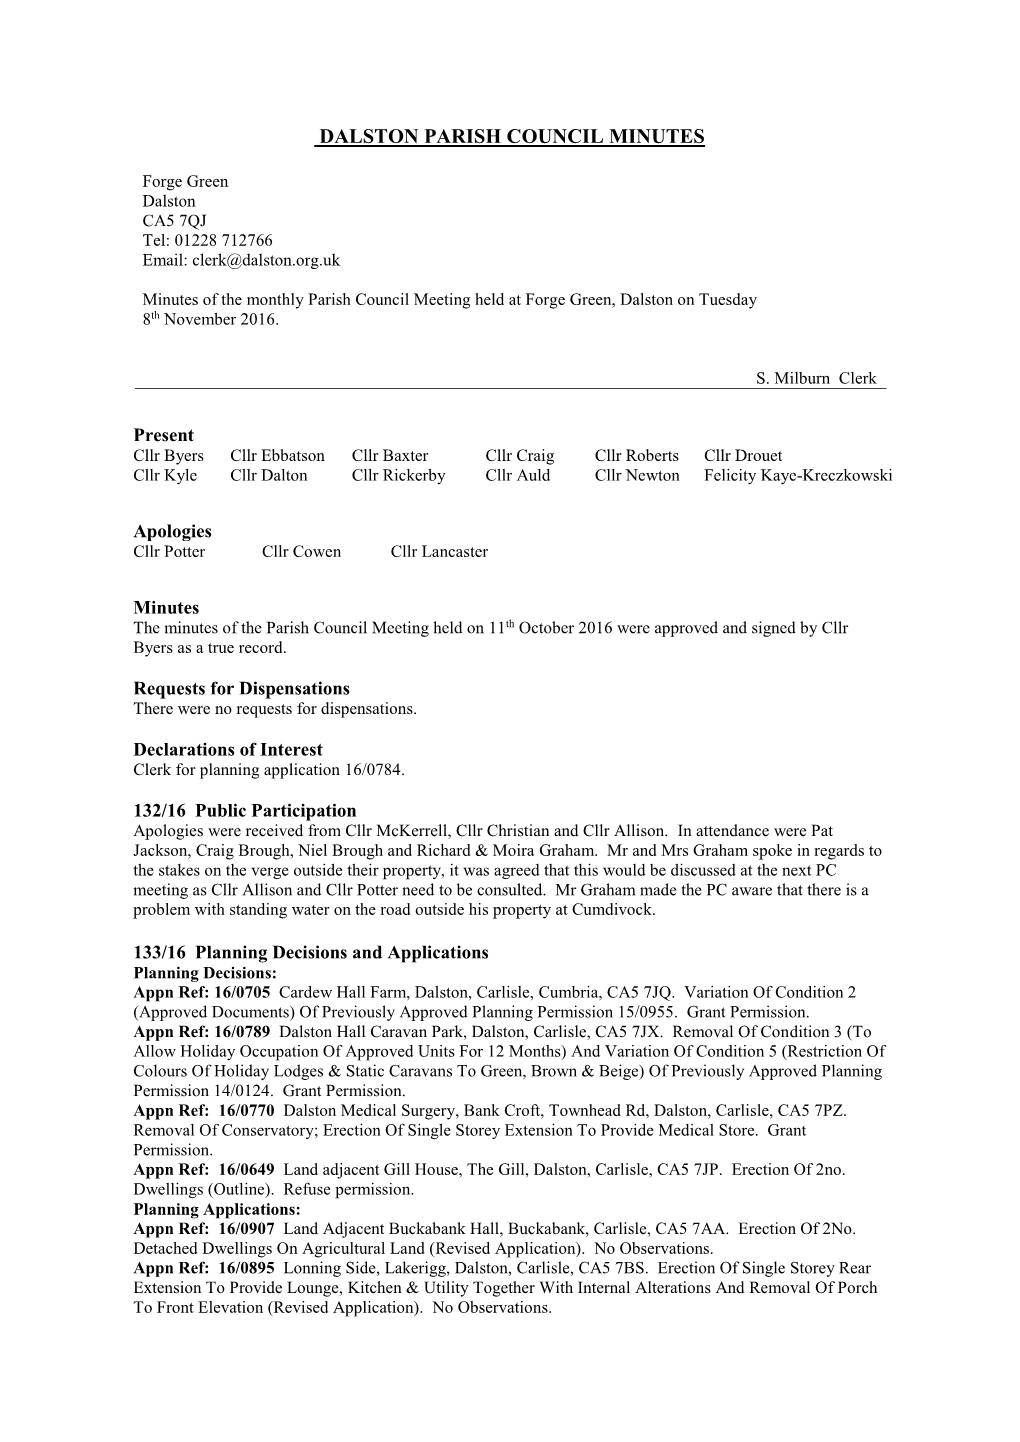 Dalston Parish Council Minutes